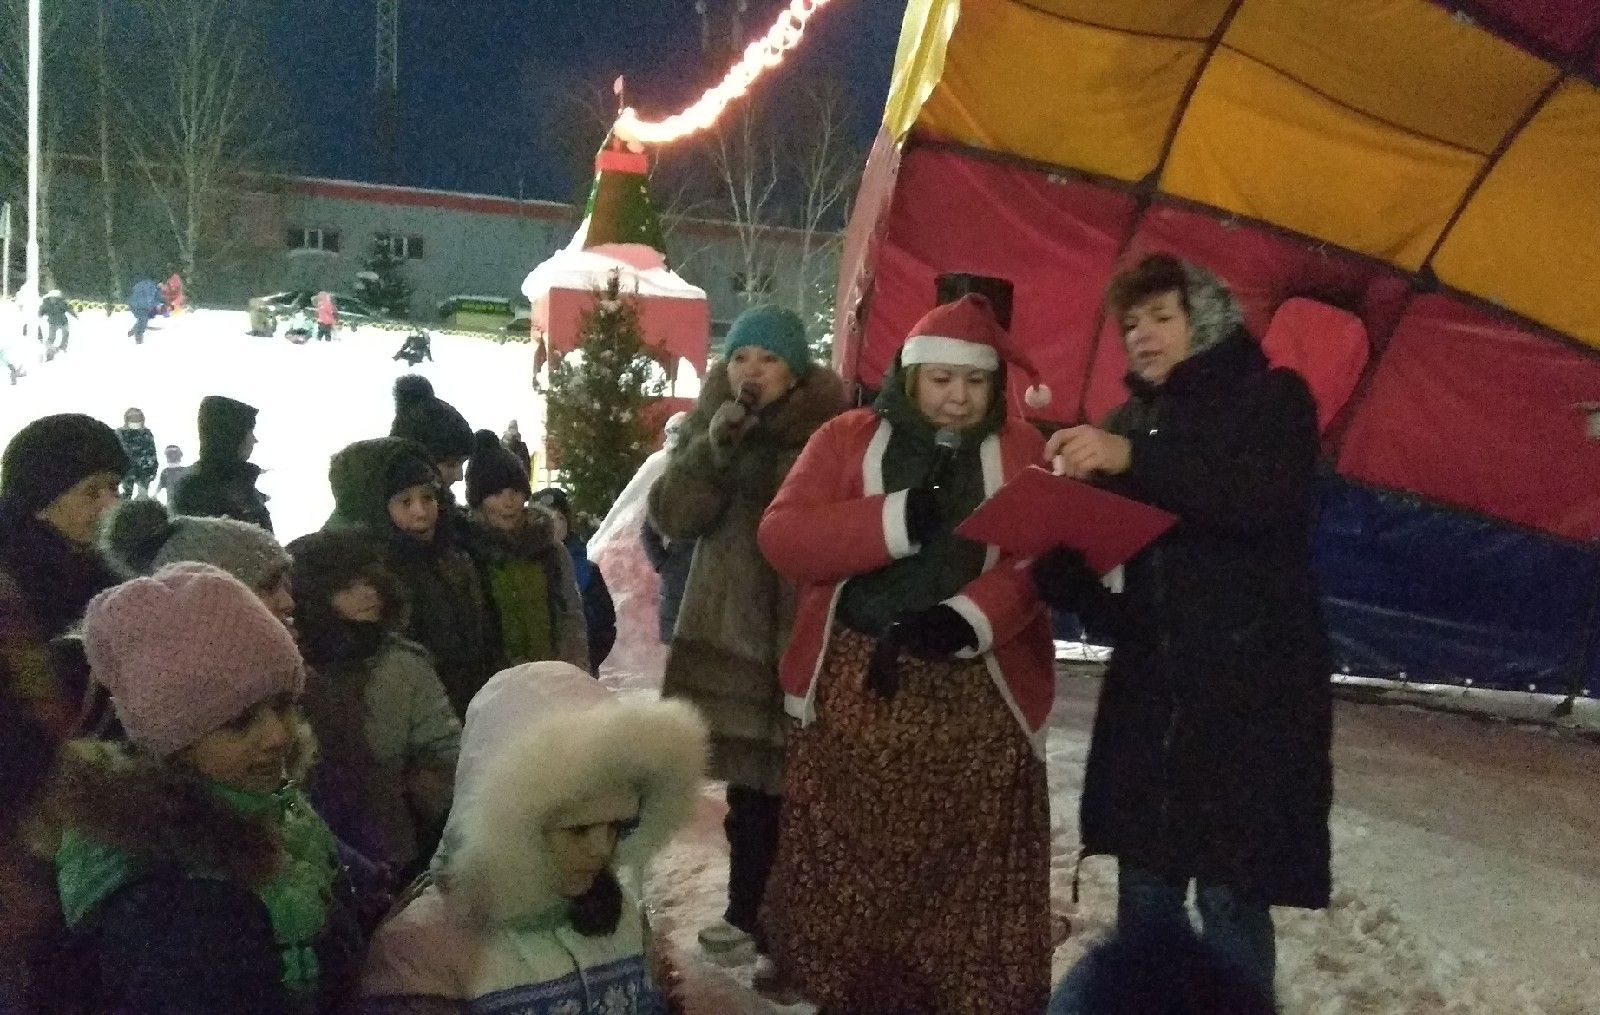 Пестречинцы проводили Деда Мороза и попрощались с новогодними праздниками до следующего года